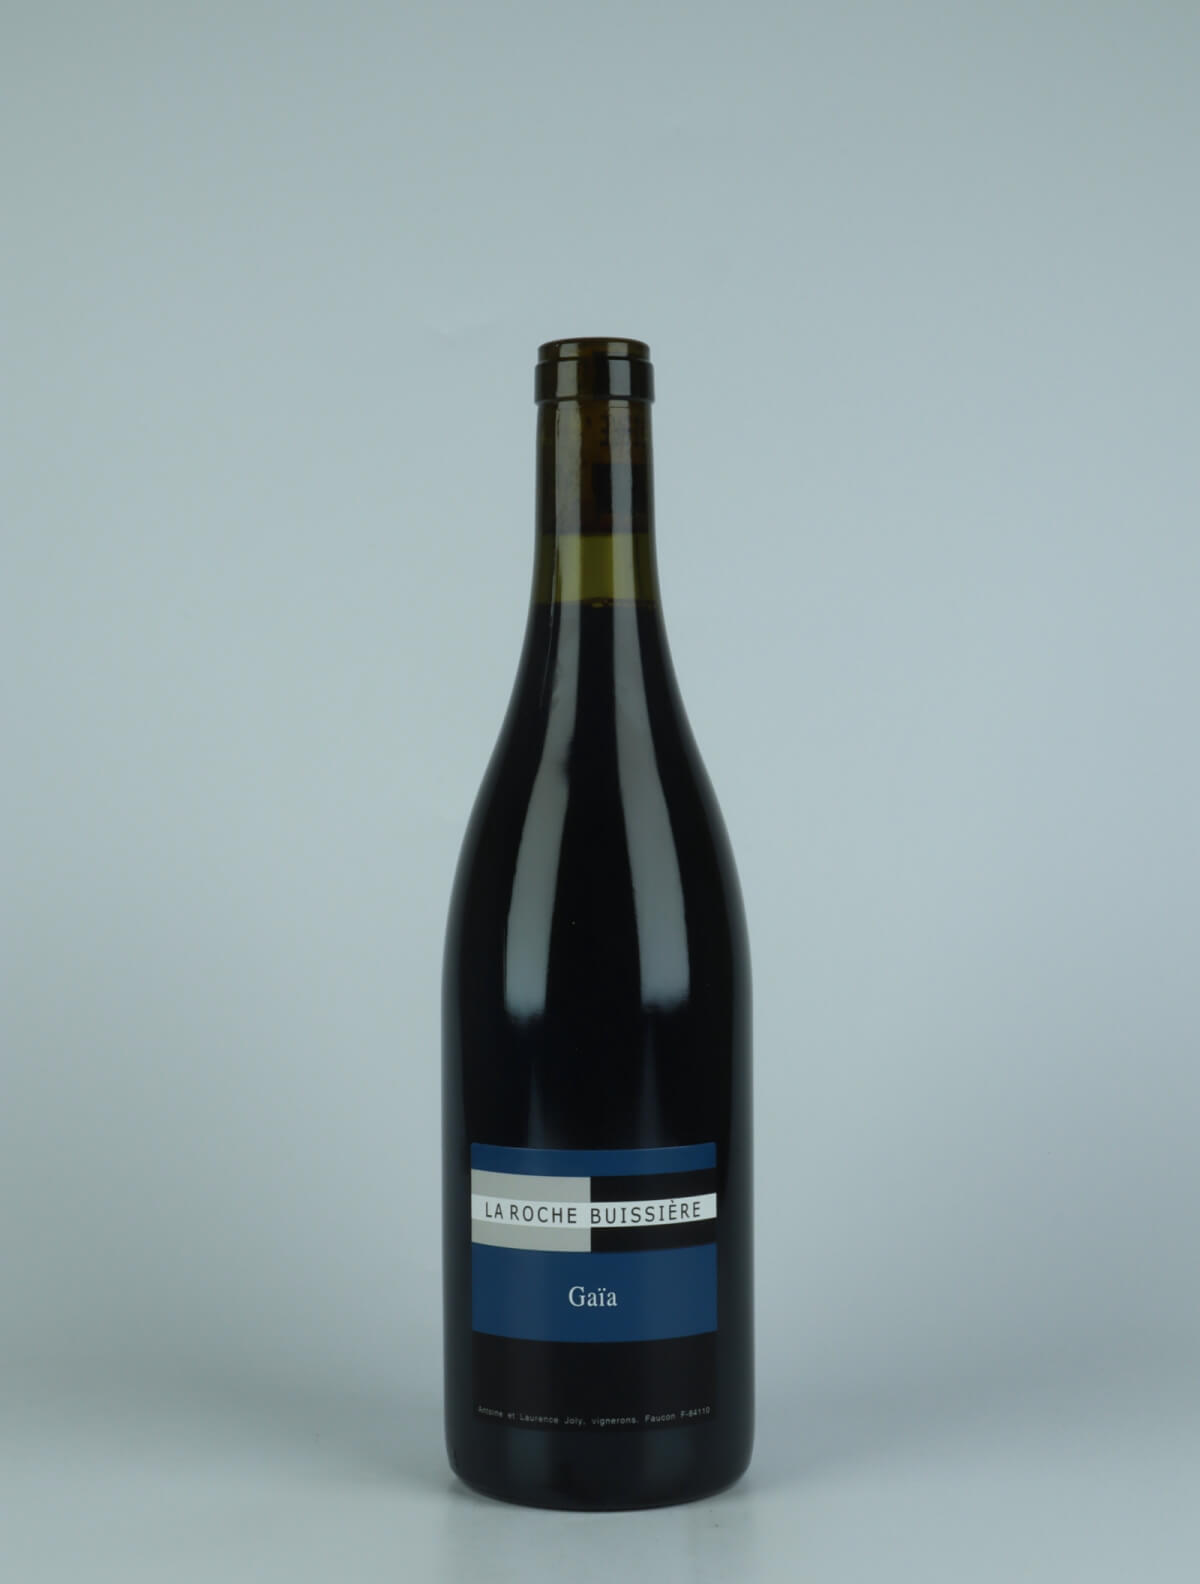 A bottle 2020 Gaïa - Côtes du Rhône Red wine from La Roche Buissière, Rhône in France